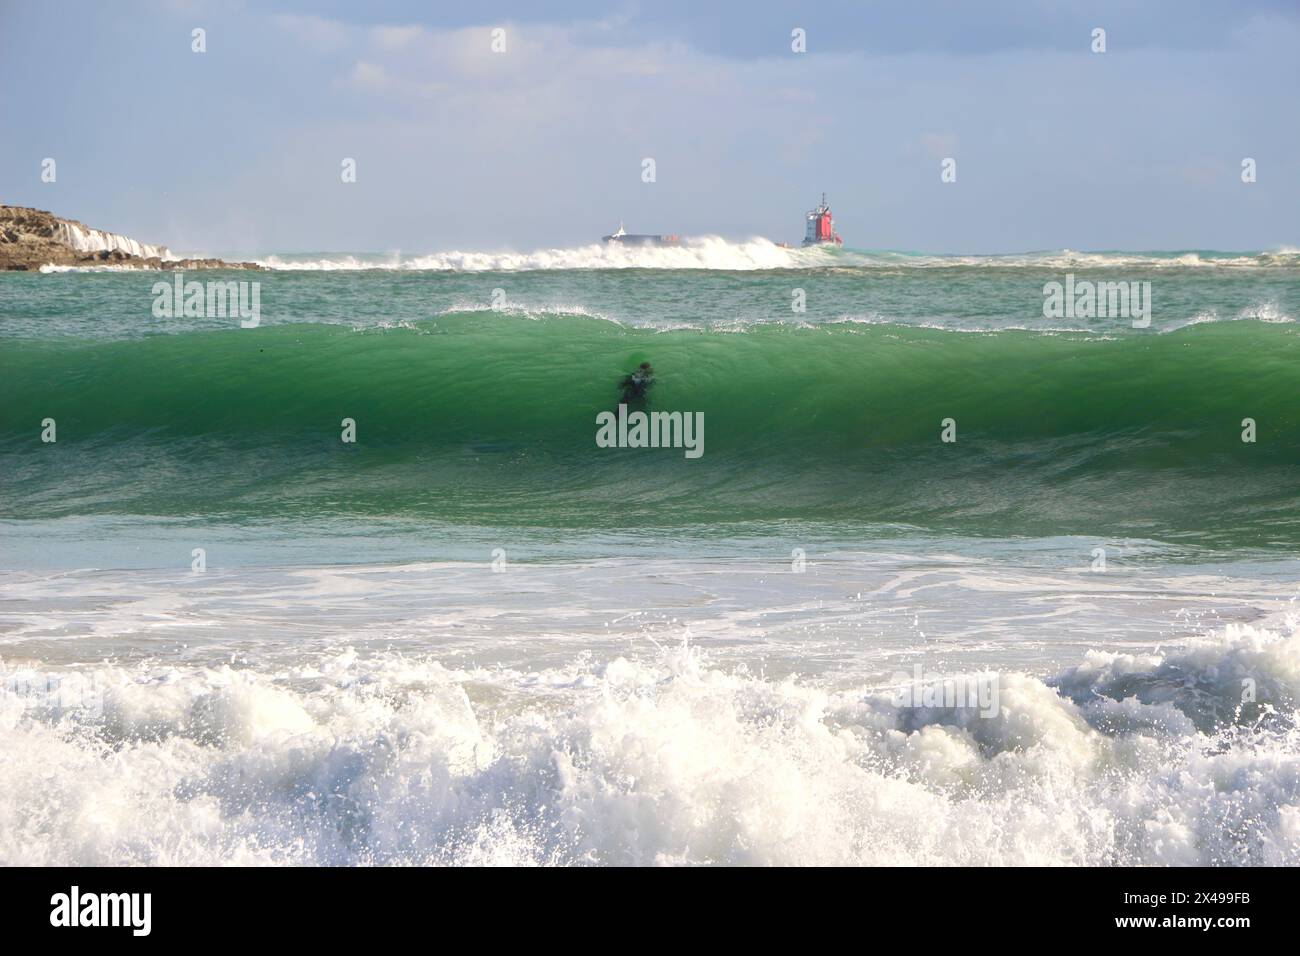 Untergetauchter Surfer in rauer See mit einem fernen Frachtschiff, das den Hafen von Santander an einem sonnigen Oktobermorgen verlässt Sardinero Santander Cantabria Spanien Stockfoto